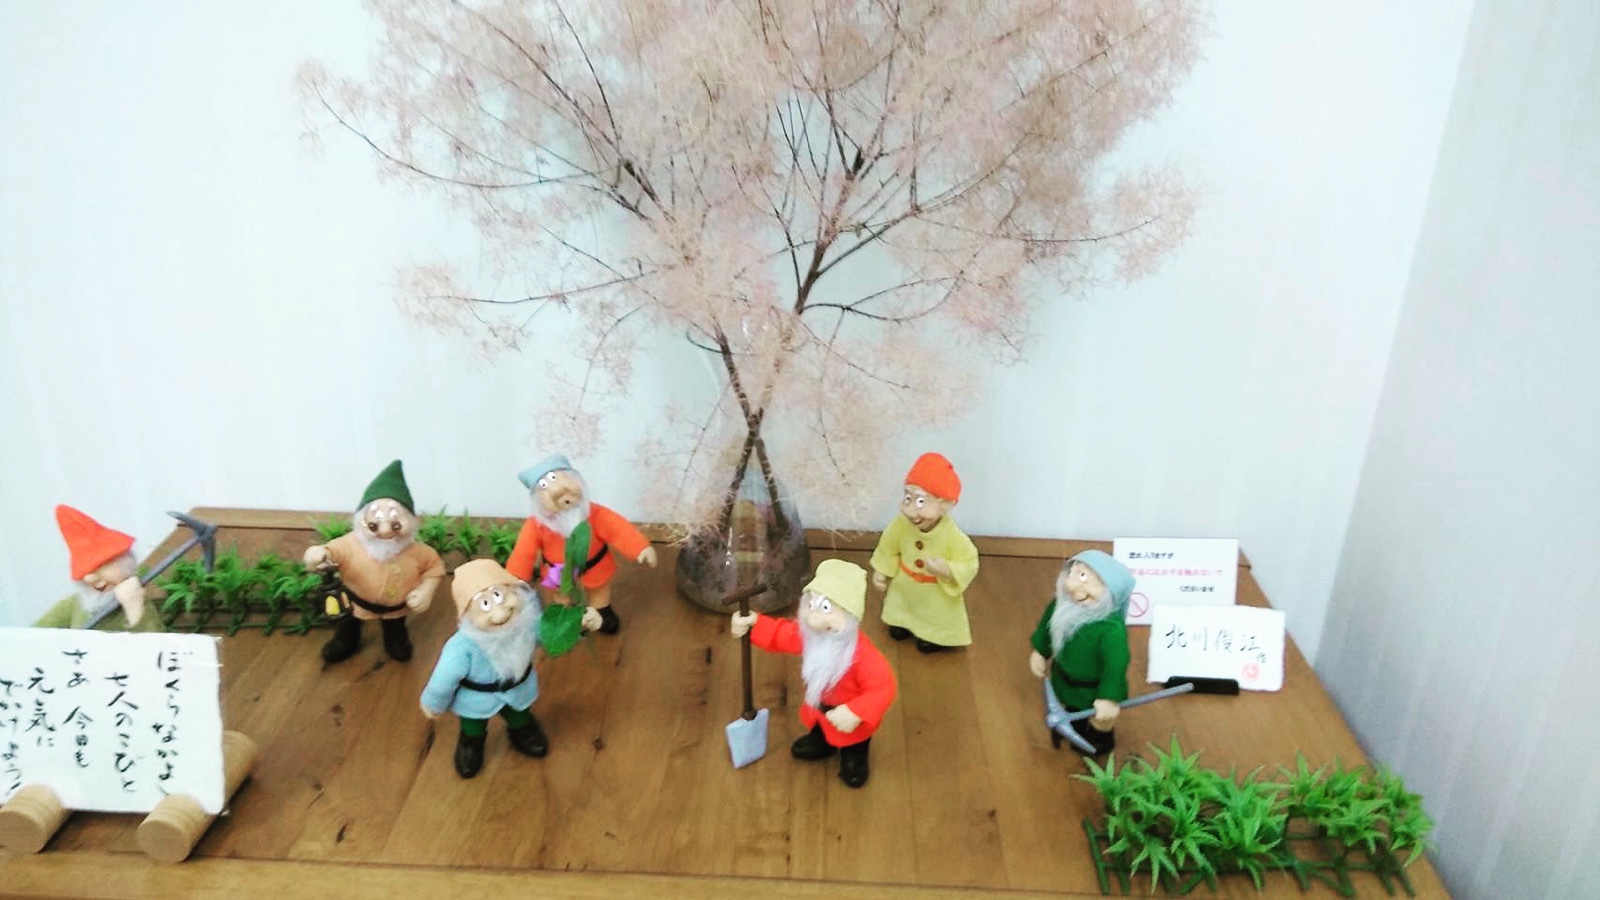 池畑診療所に展示してある北川さんの作品7人の小人